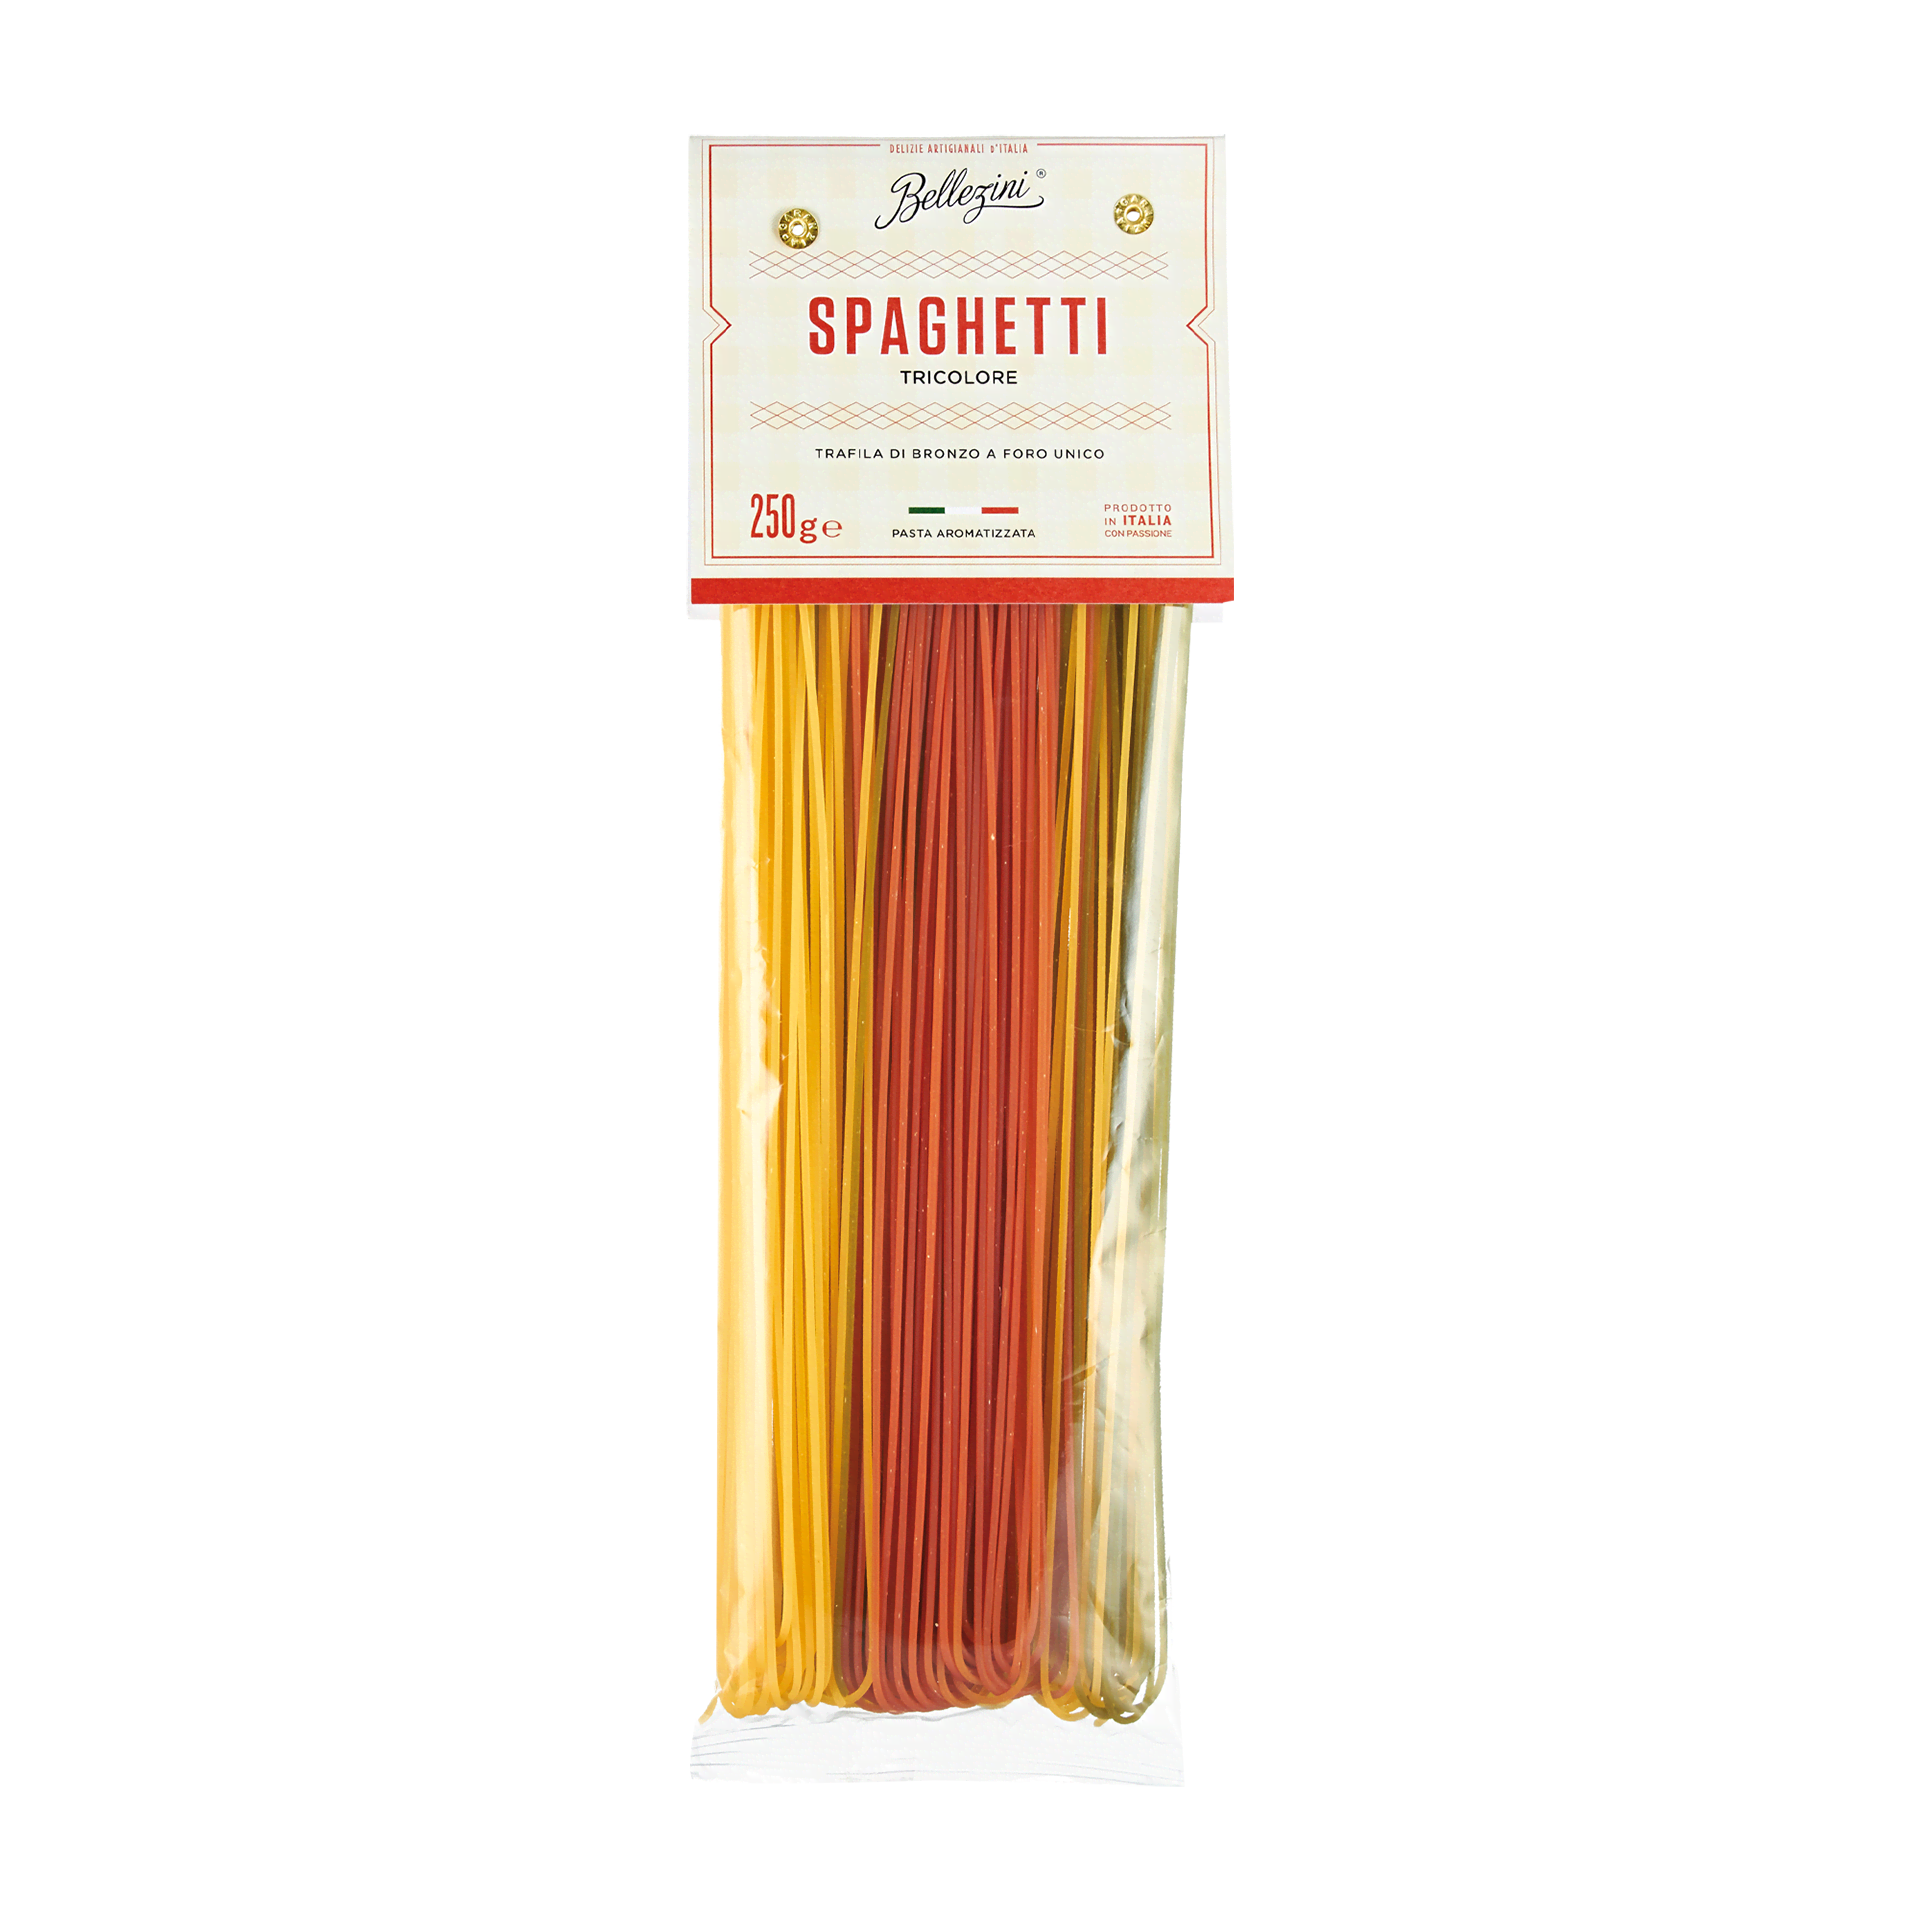 Spaghetti Tricolore - Original italienische Pasta